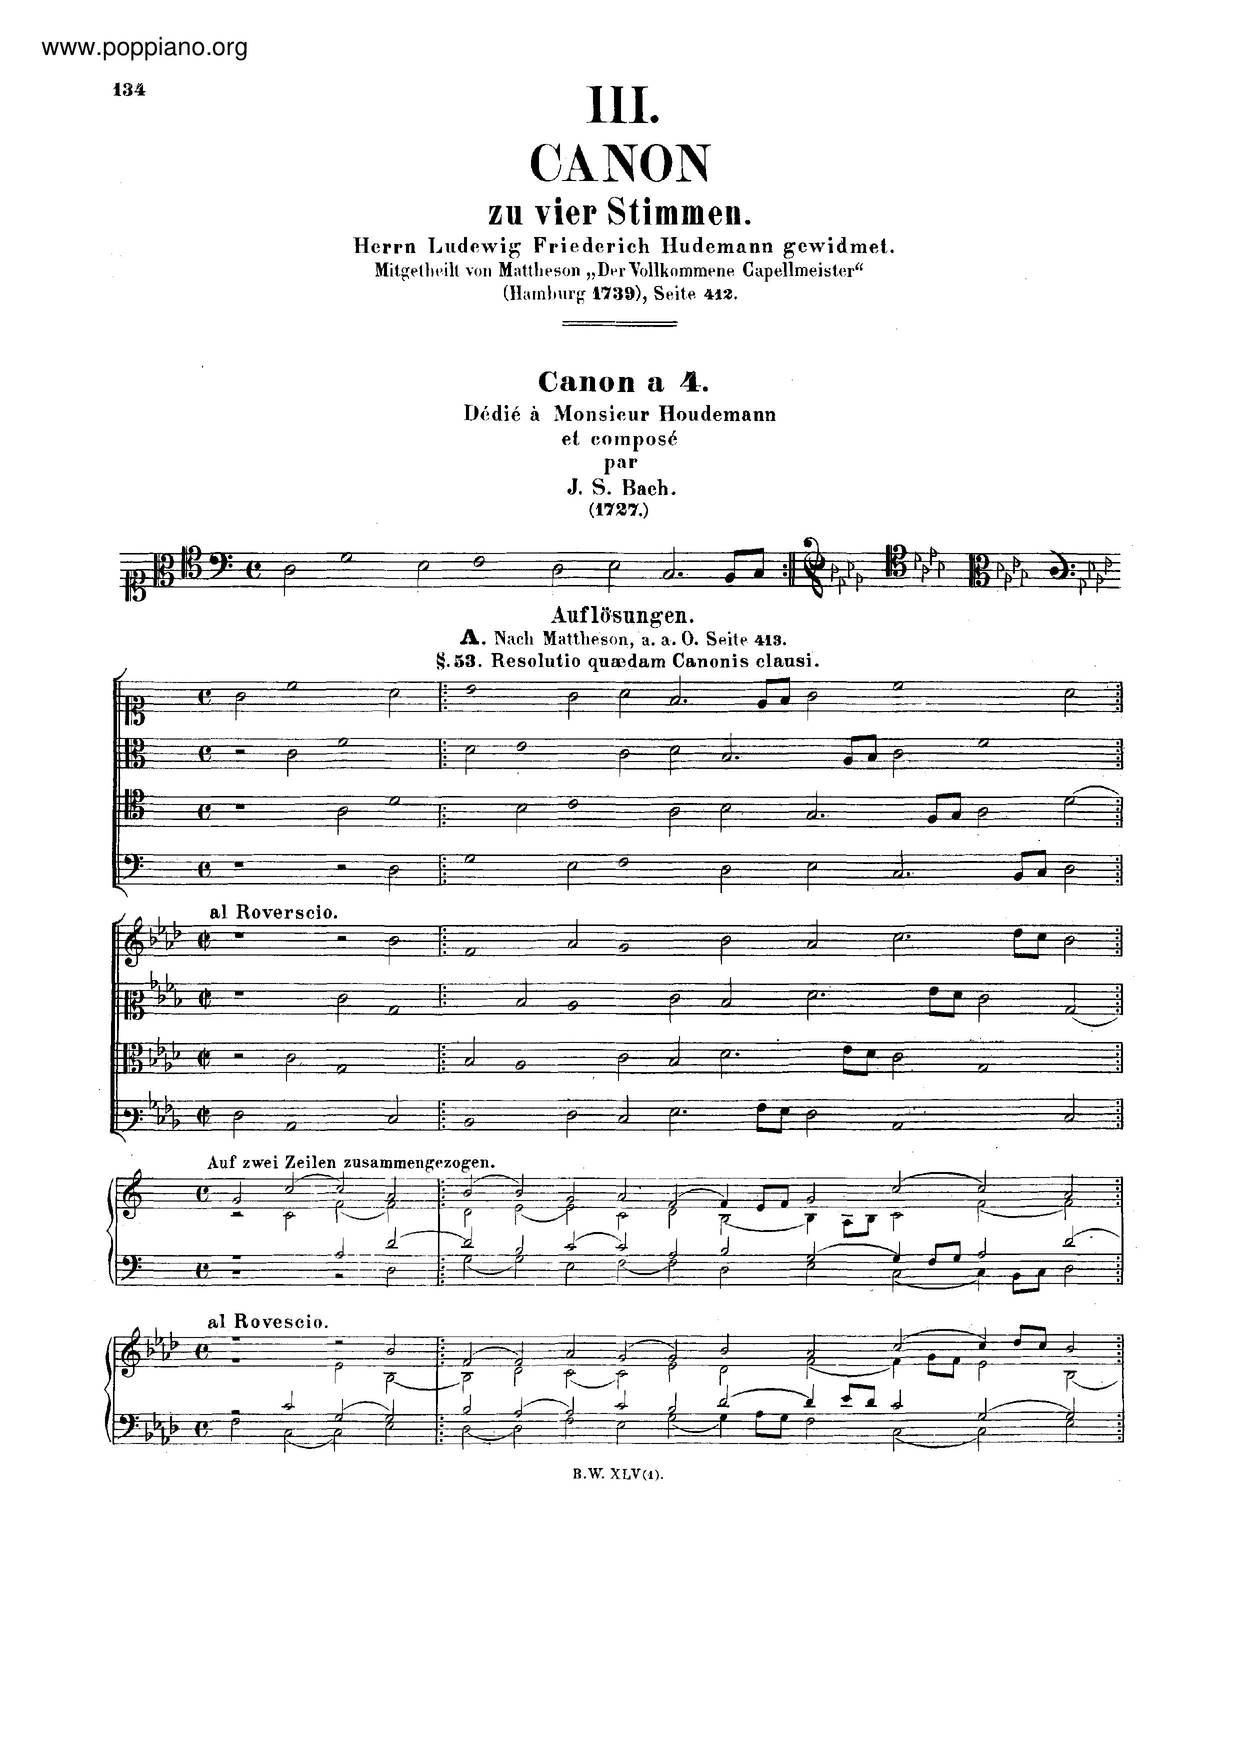 Canon In A Minor, BWV 1074琴谱